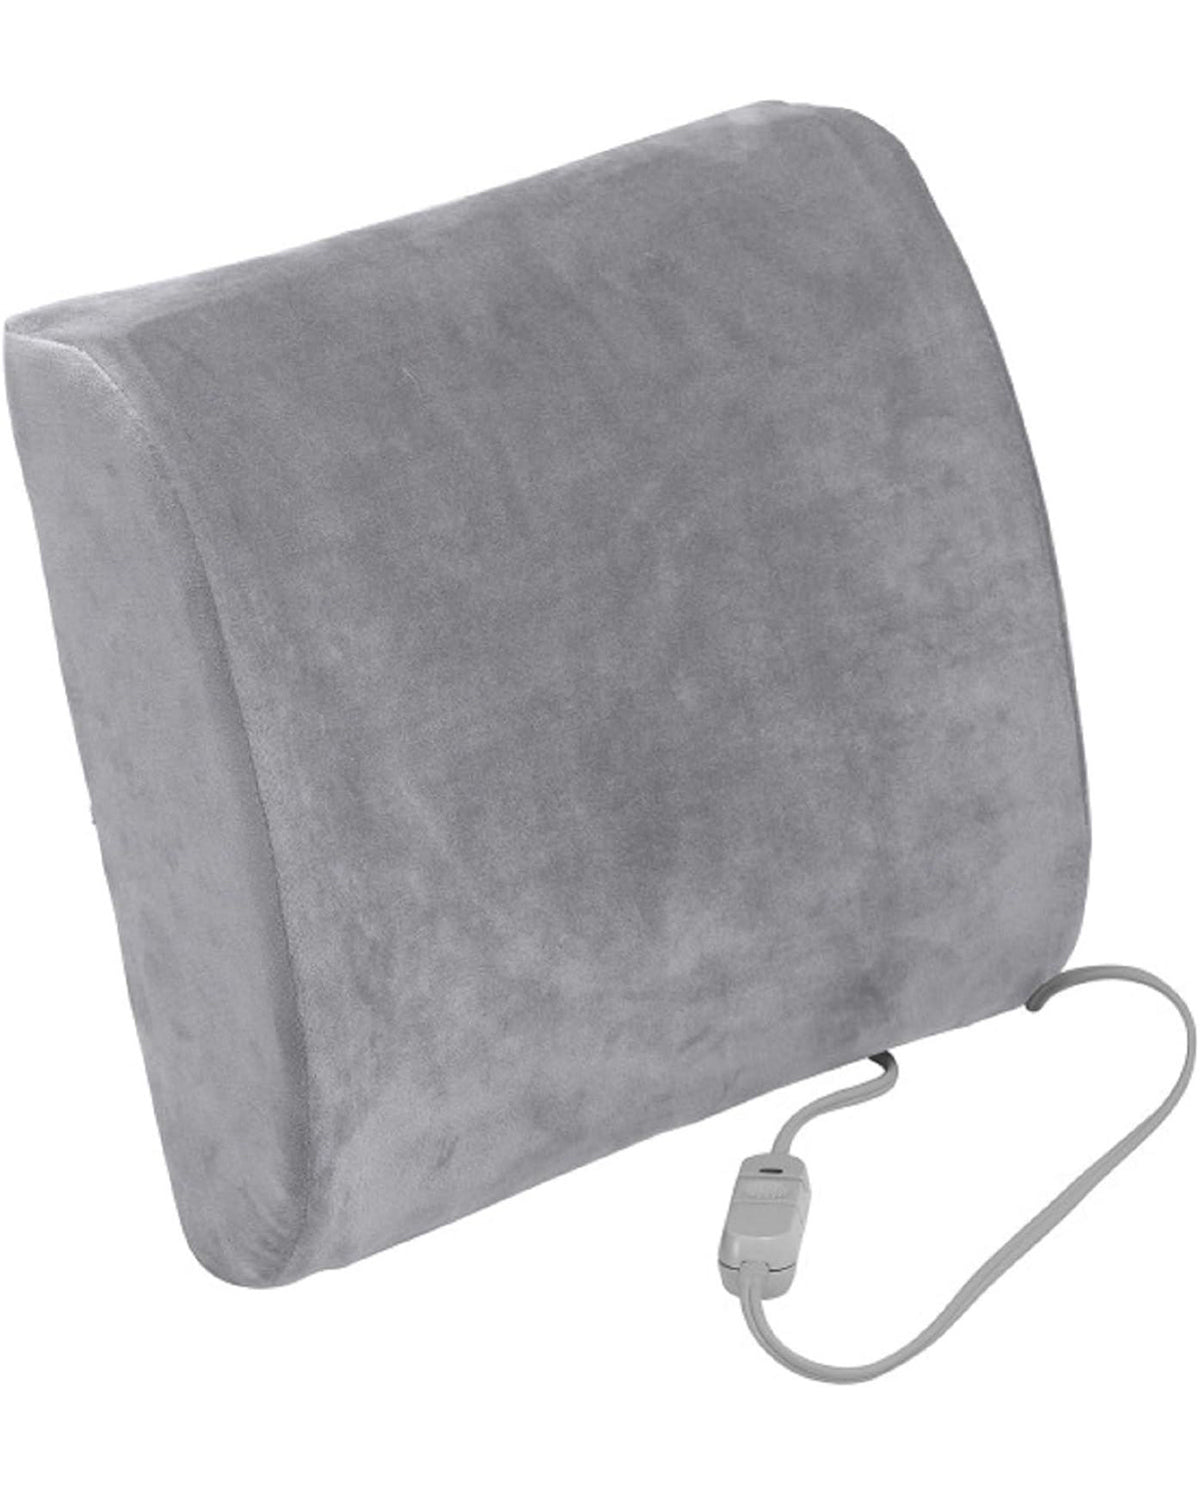 Heated Lumbar Support Pillow